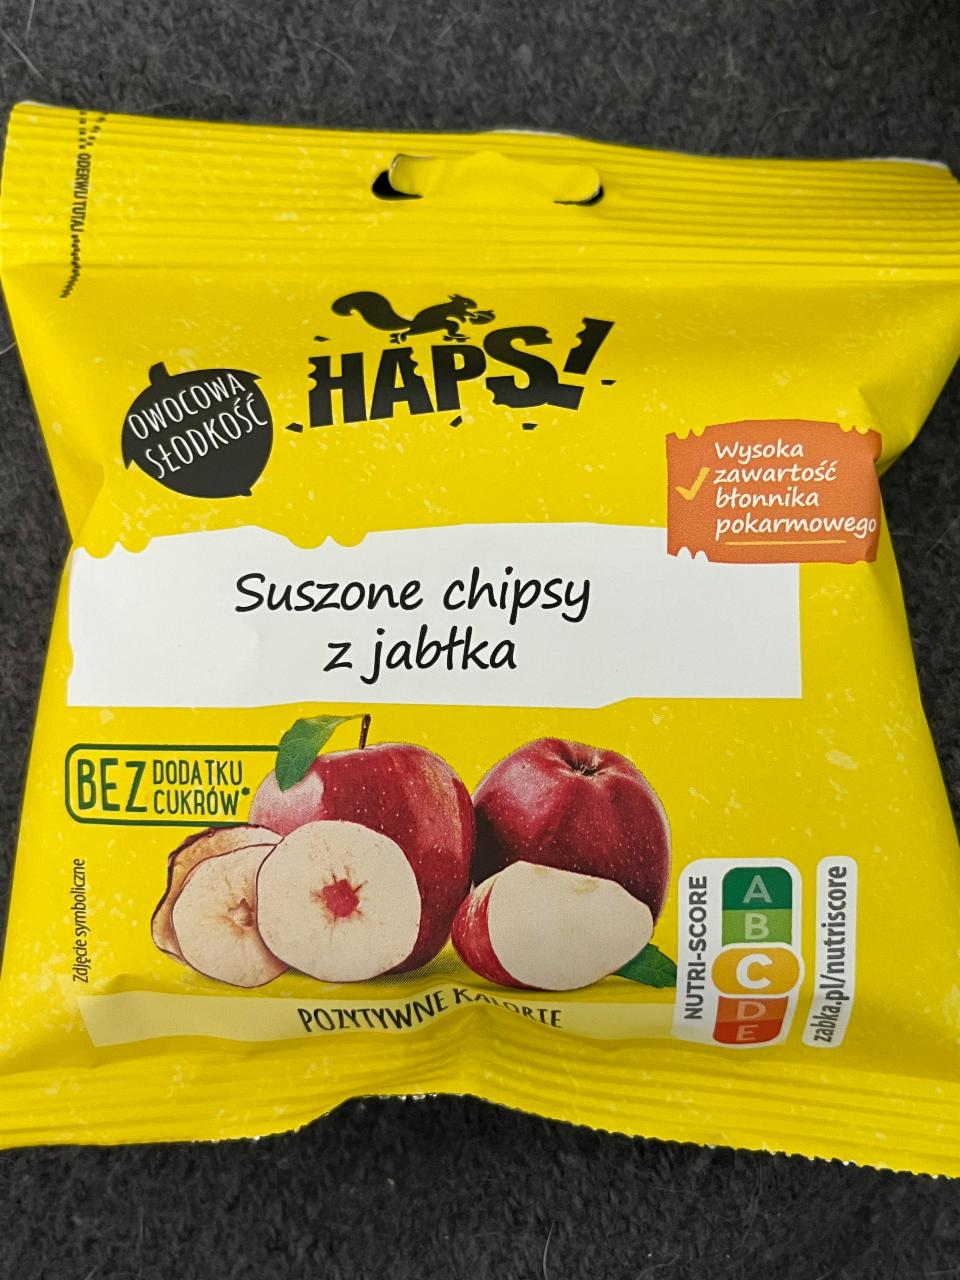 Фото - Чипсы сушеные яблочные Haps!